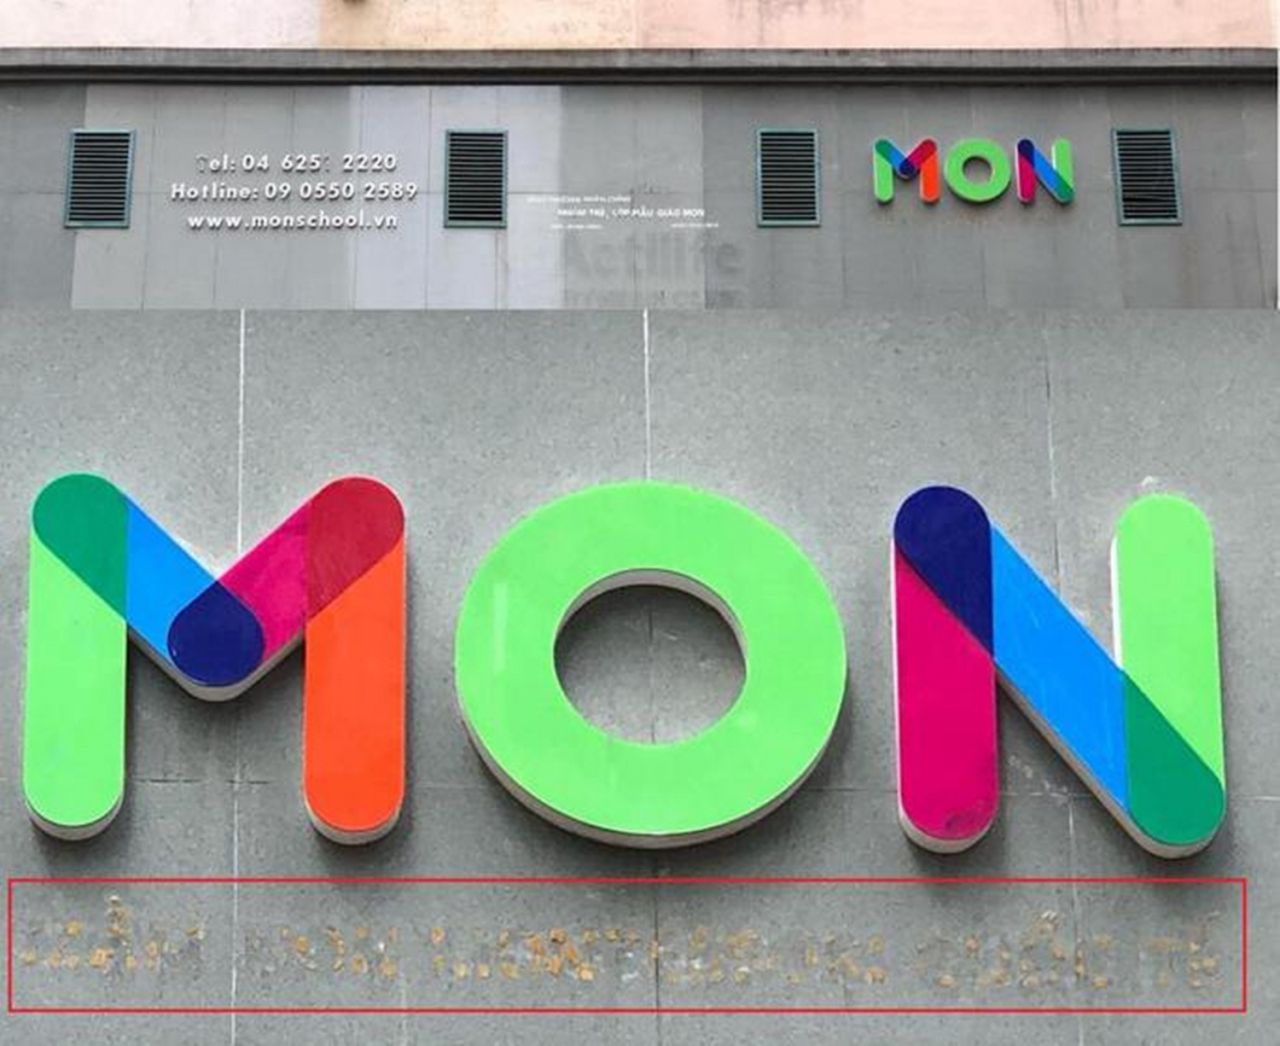 Trường Mầm non Montessori (ở Khu đô thị Trung Hòa Nhân Chính, quận Thanh Xuân, Hà Nội) cũng xóa bỏ dòng chữ tiếng Anh trên biển hiệu của trường. (Ảnh: Người Lao Động).